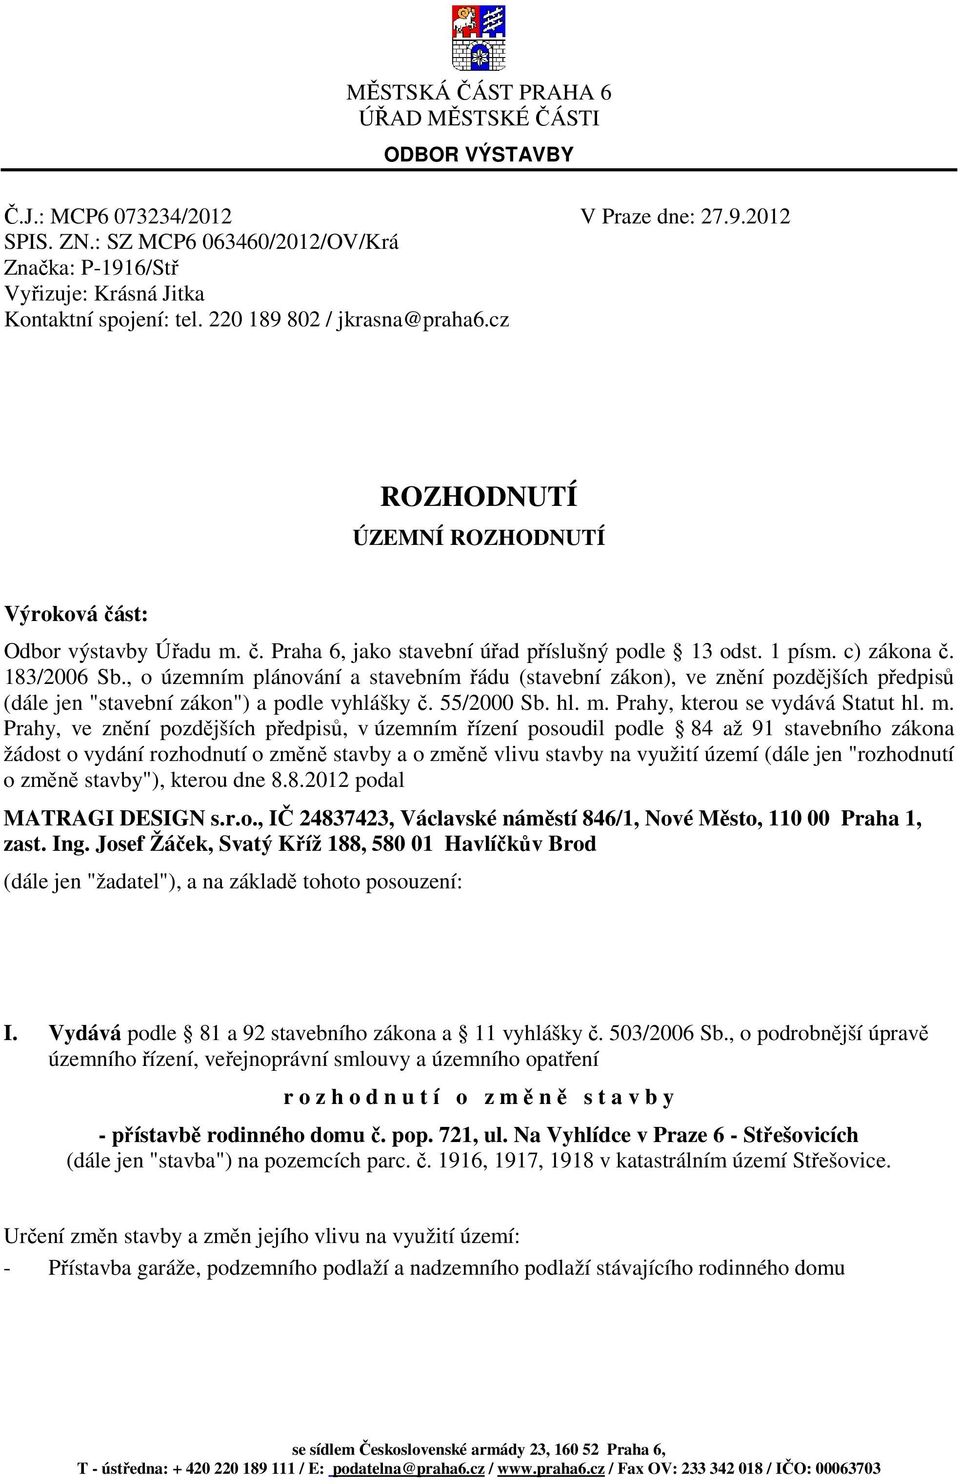 st: Odbor výstavby Úřadu m. č. Praha 6, jako stavební úřad příslušný podle 13 odst. 1 písm. c) zákona č. 183/2006 Sb.